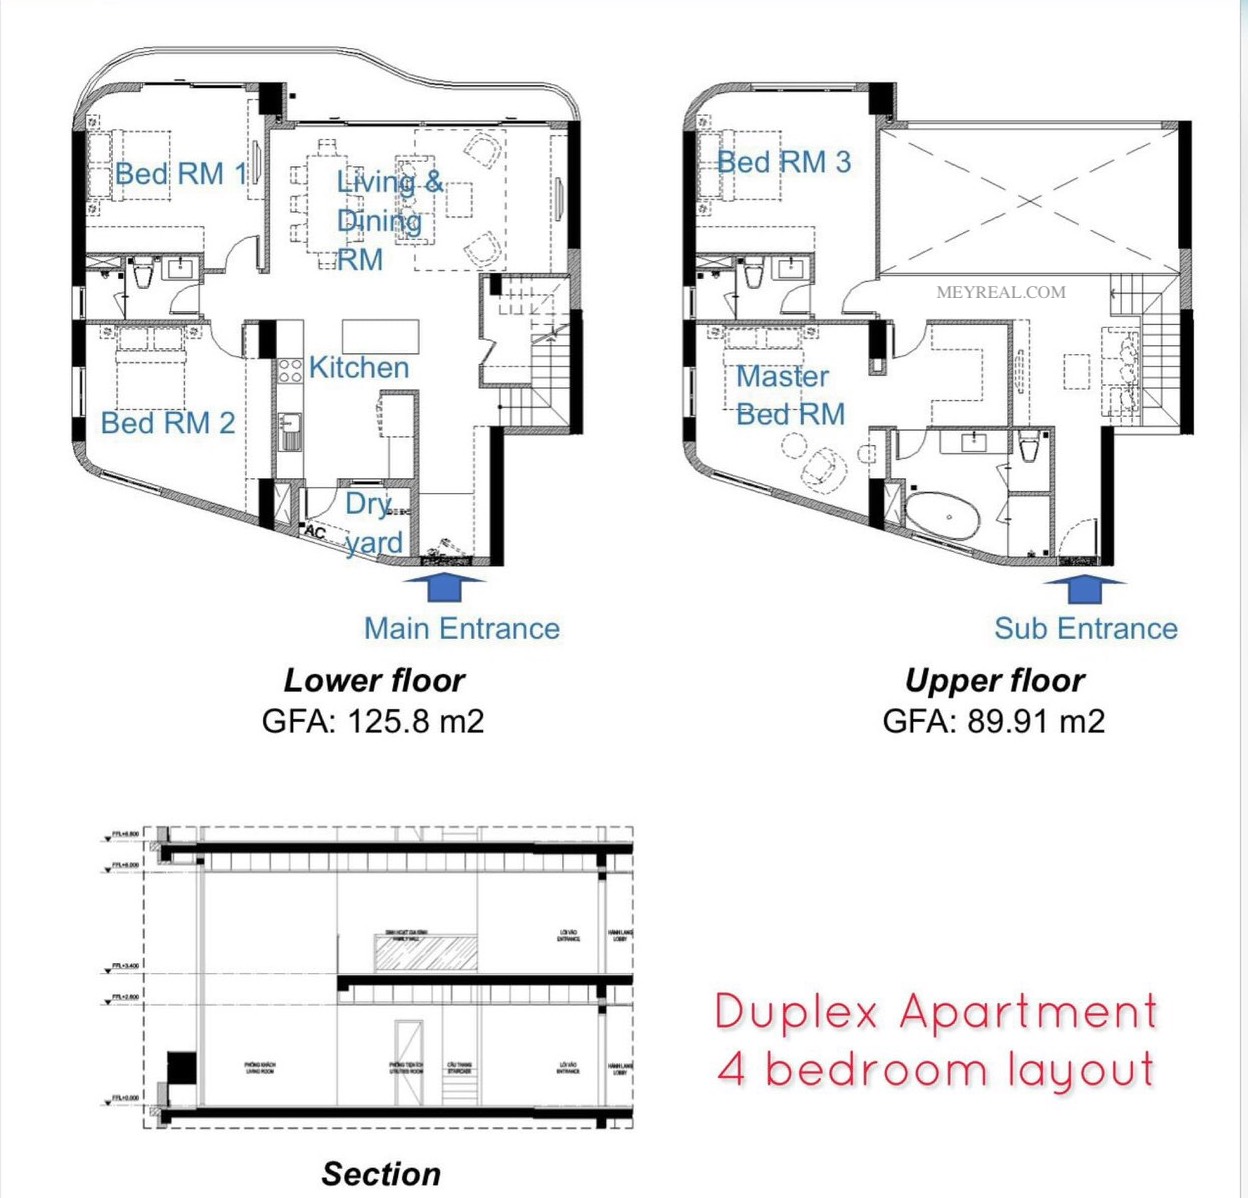 bản vẽ thiết kế 4 phòng ngủ duplex thủ thiêm zeit river